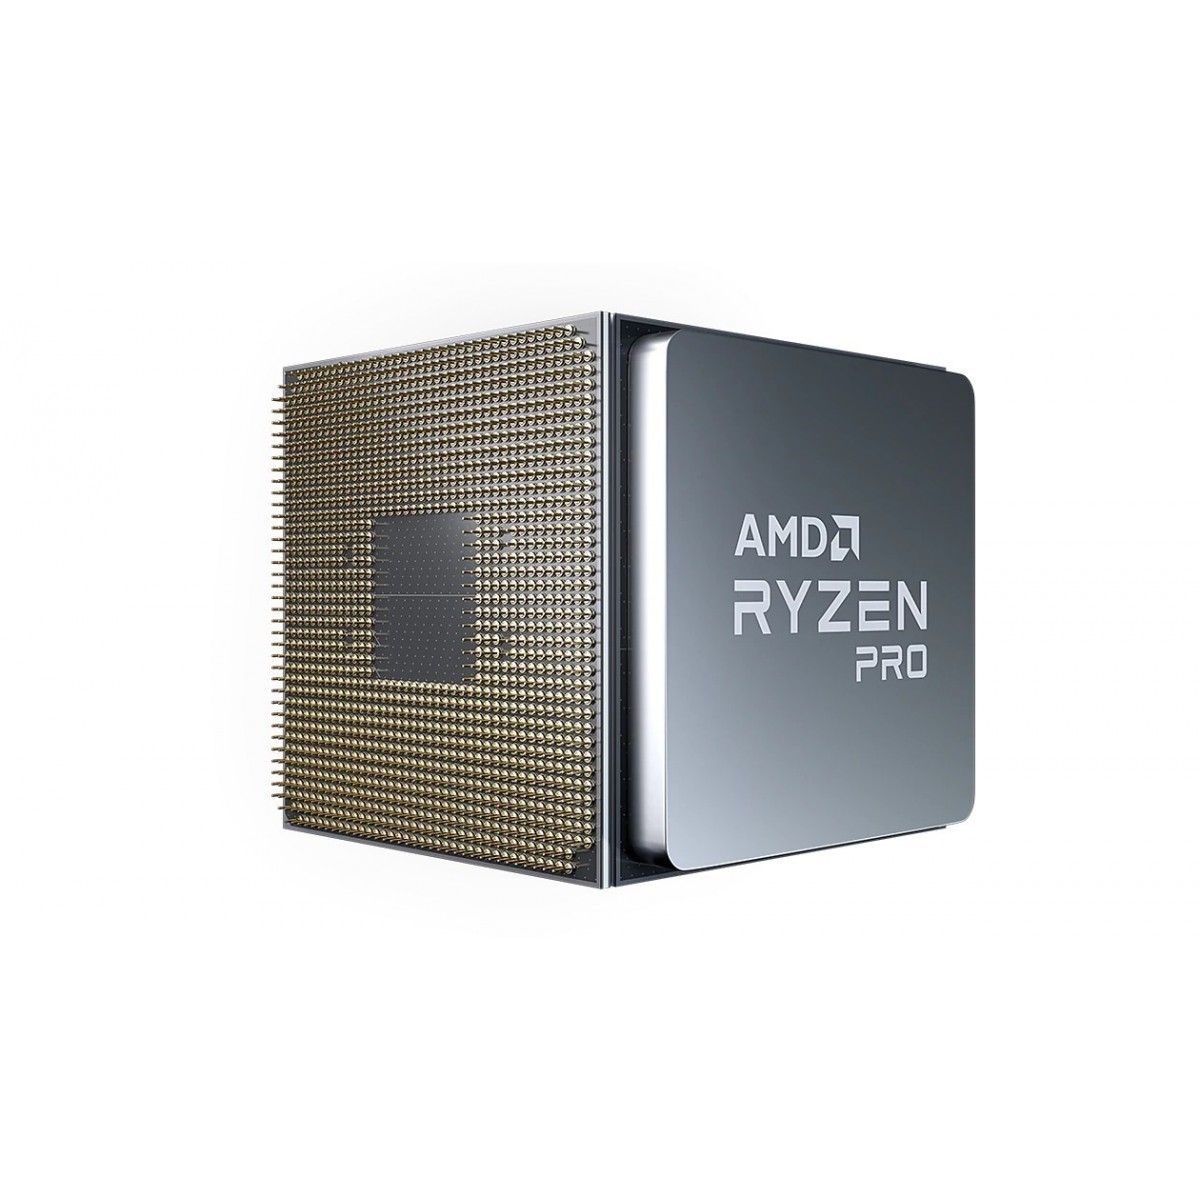 AMD Ryzen 7 PRO 4750G - AMD Ryzen 7 PRO - Socket AM4 - PC - 7 nm - AMD - 3.6 GHz